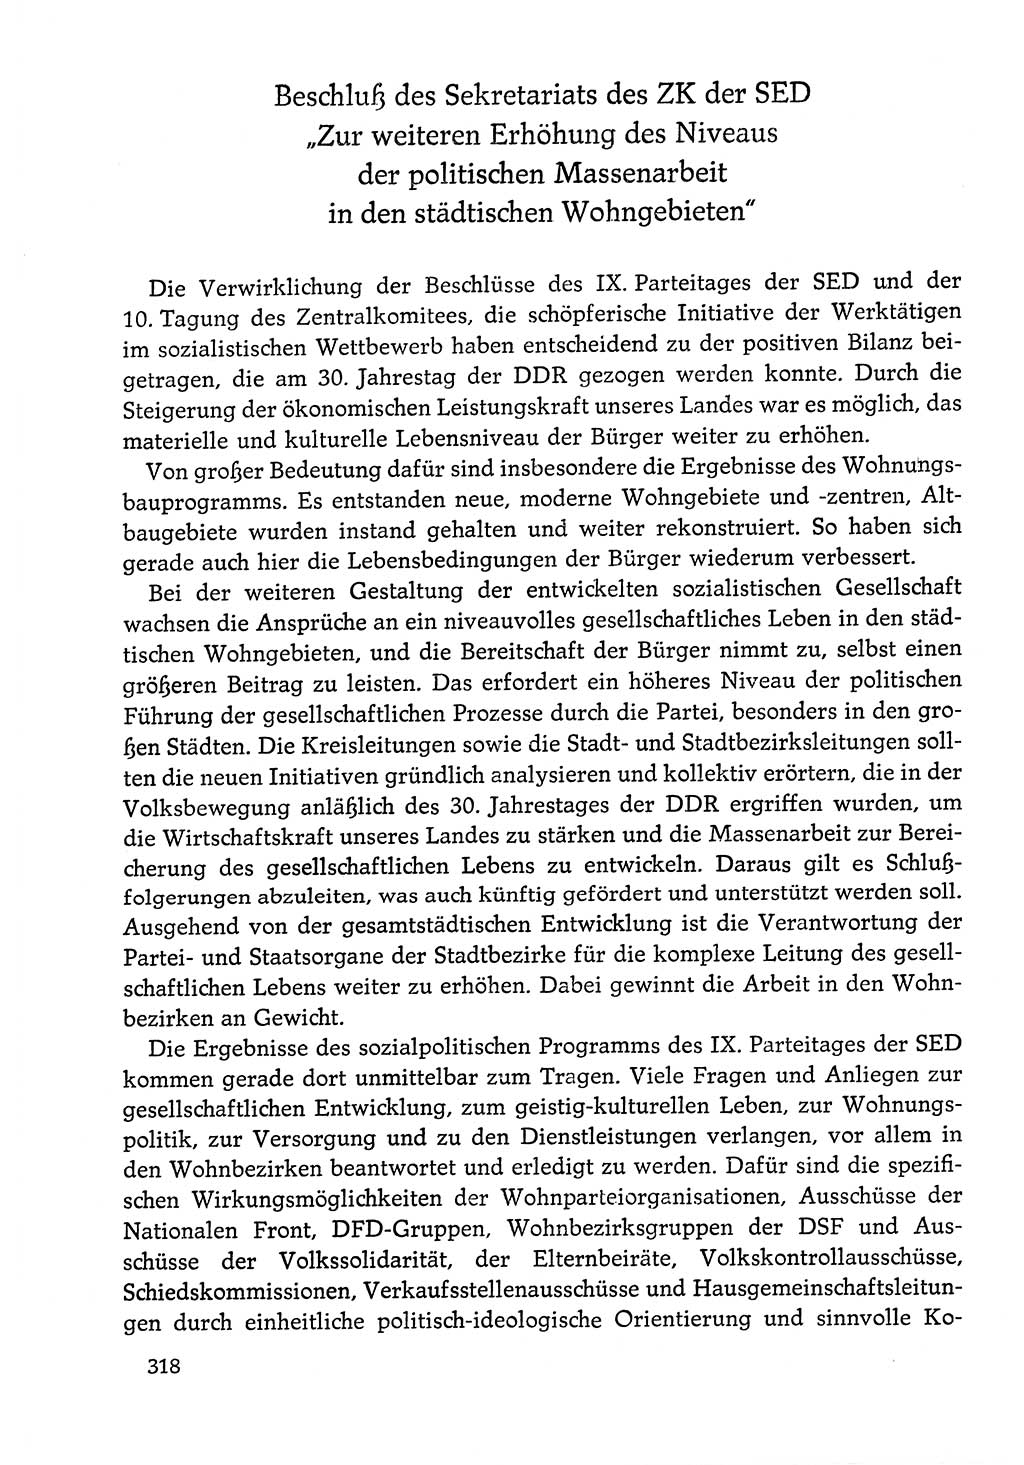 Dokumente der Sozialistischen Einheitspartei Deutschlands (SED) [Deutsche Demokratische Republik (DDR)] 1978-1979, Seite 318 (Dok. SED DDR 1978-1979, S. 318)